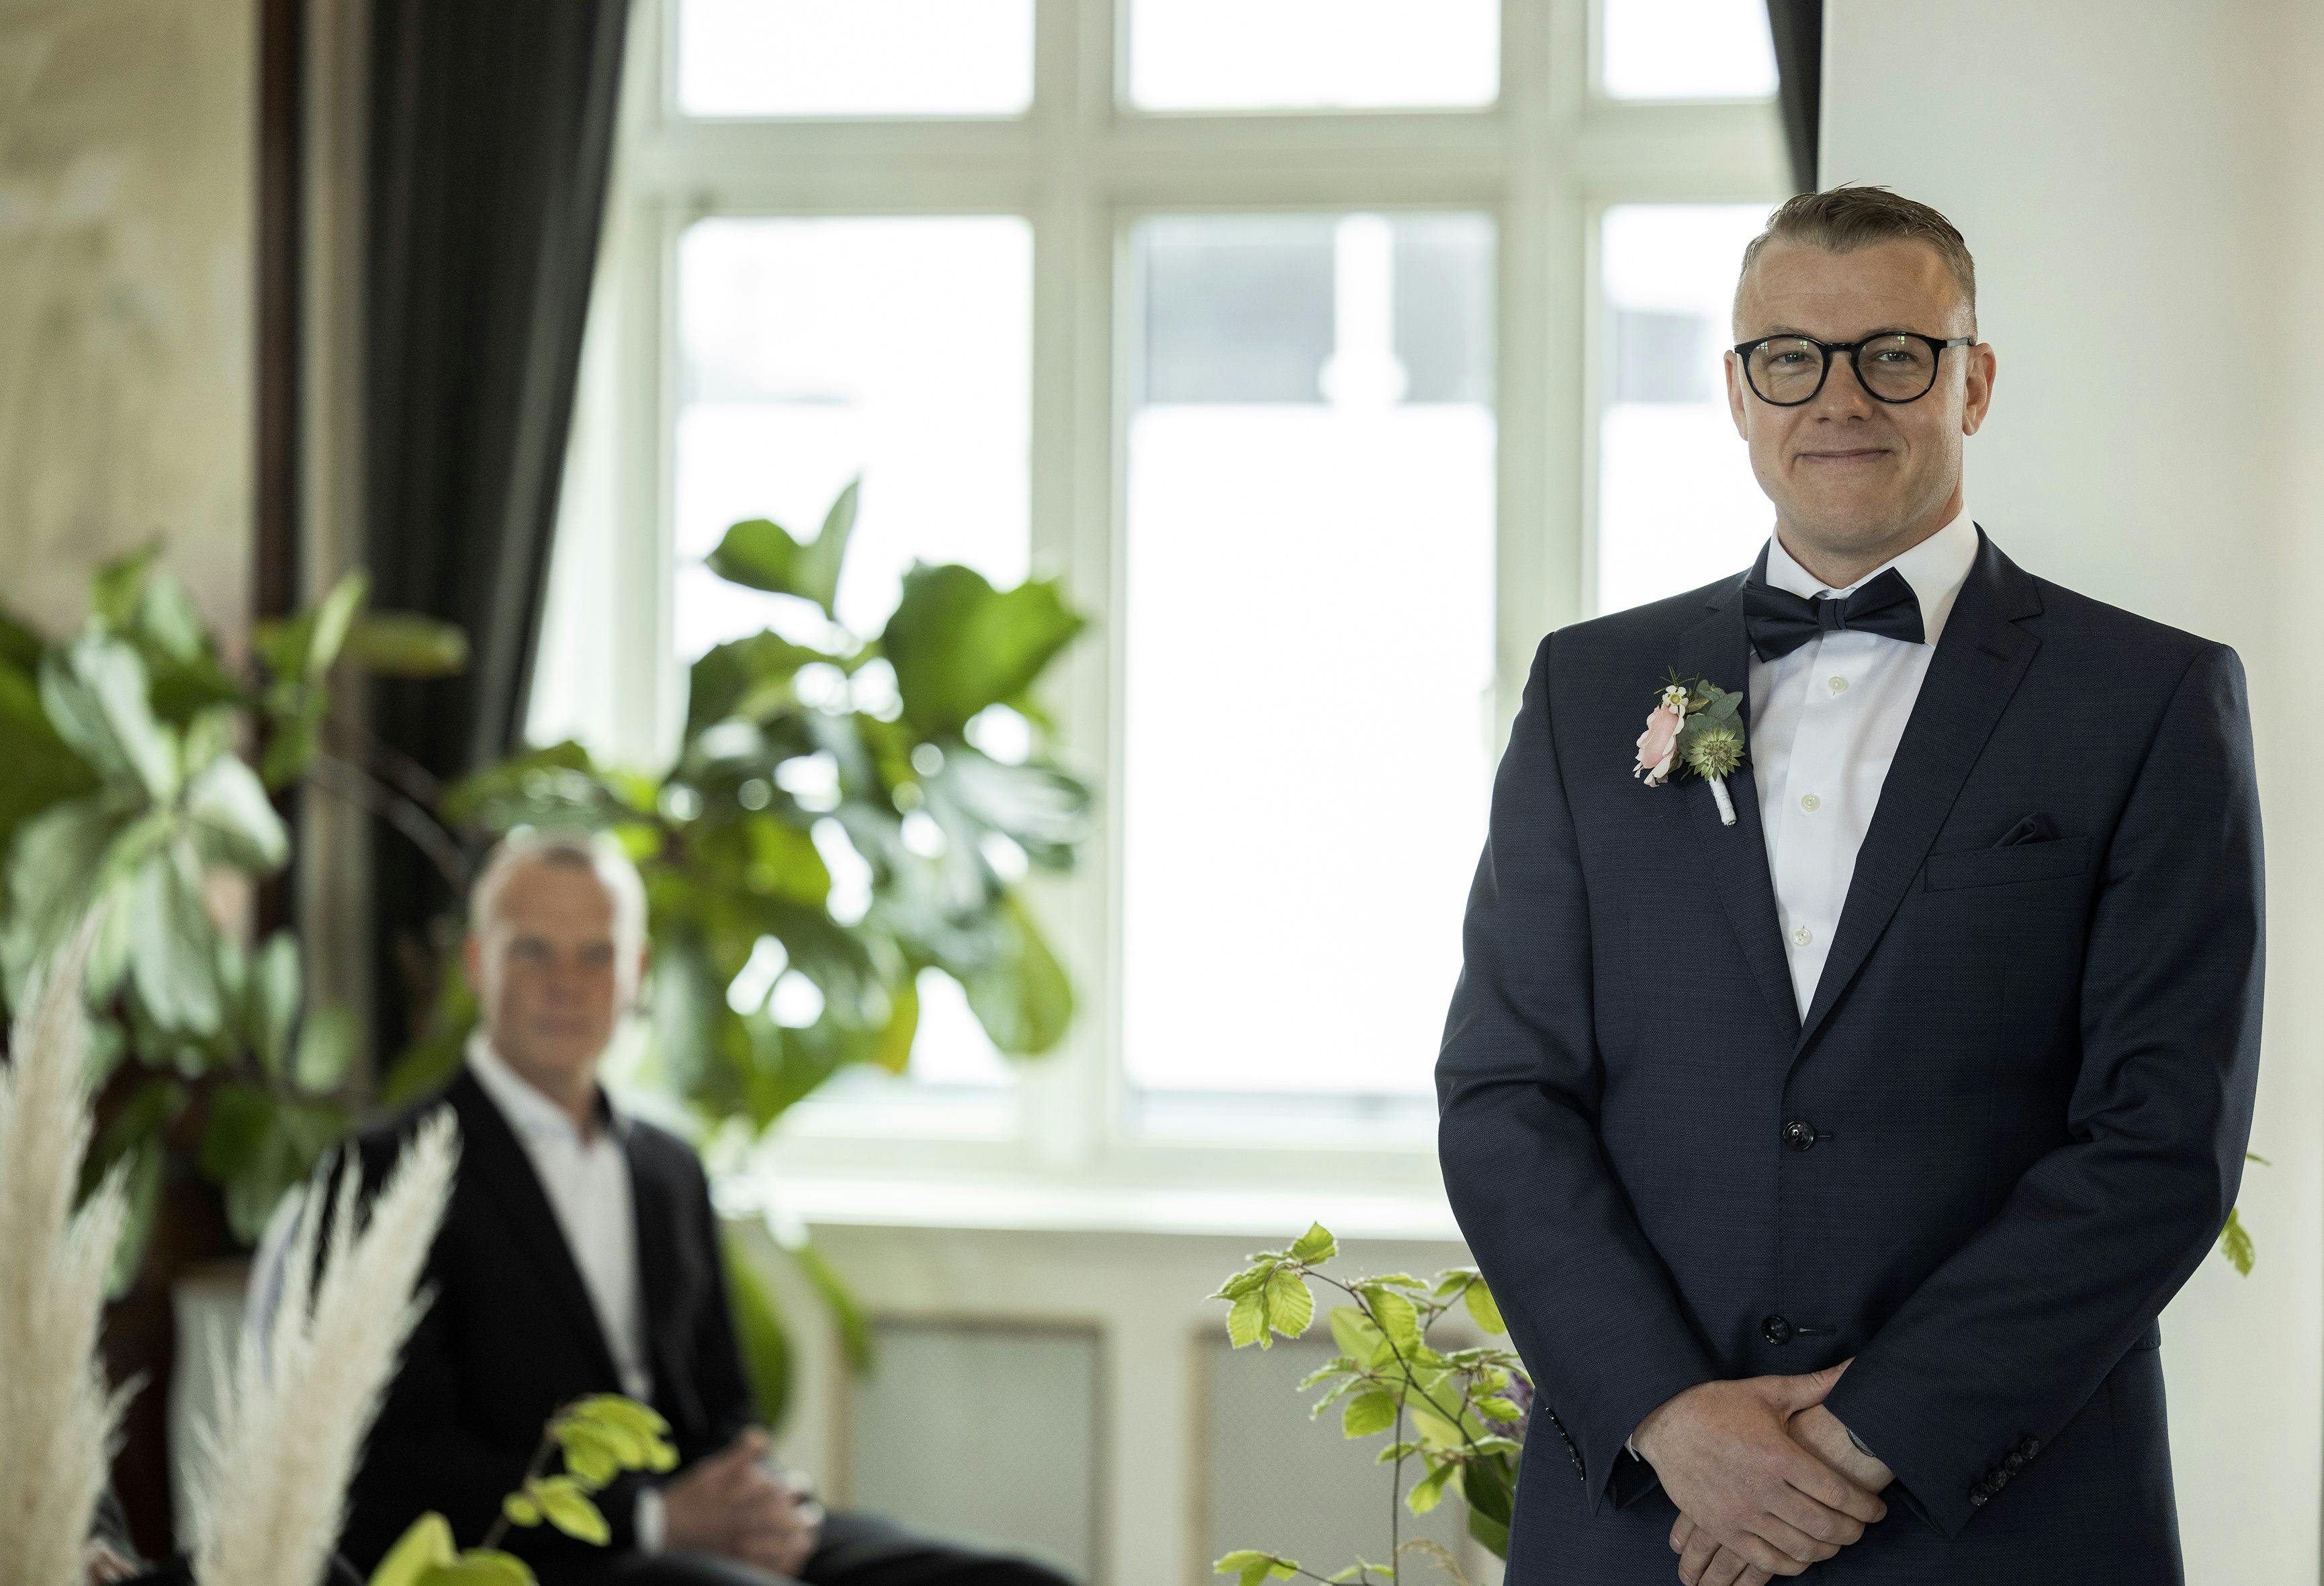 Michael Lundberg gift ved første blik